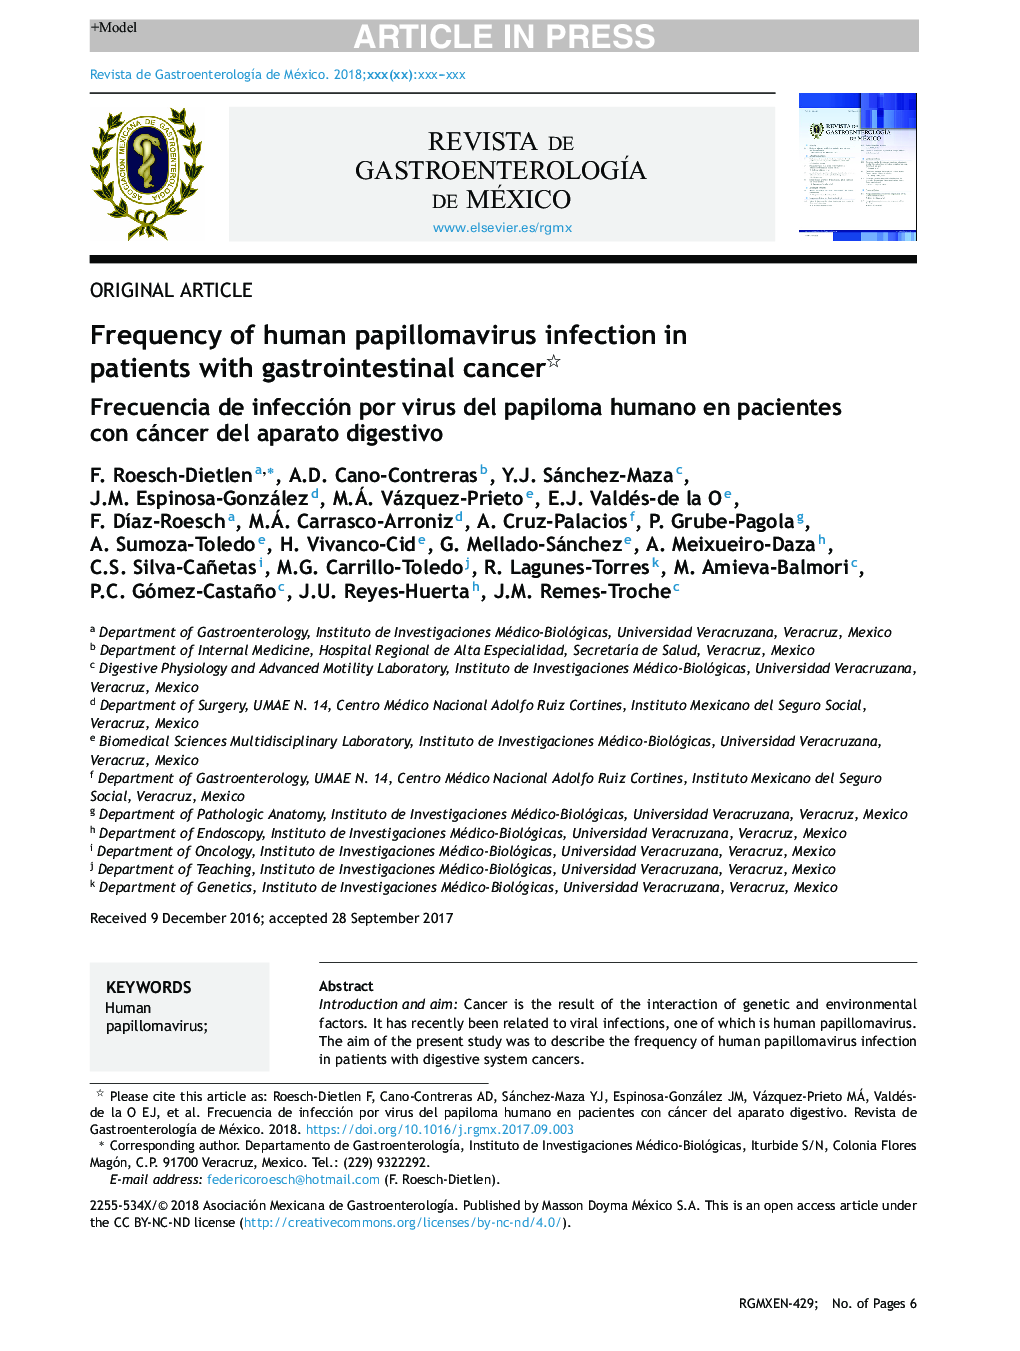 فراوانی عفونت ویروس پاپیلومای مردانه در بیماران مبتلا به سرطان معده 